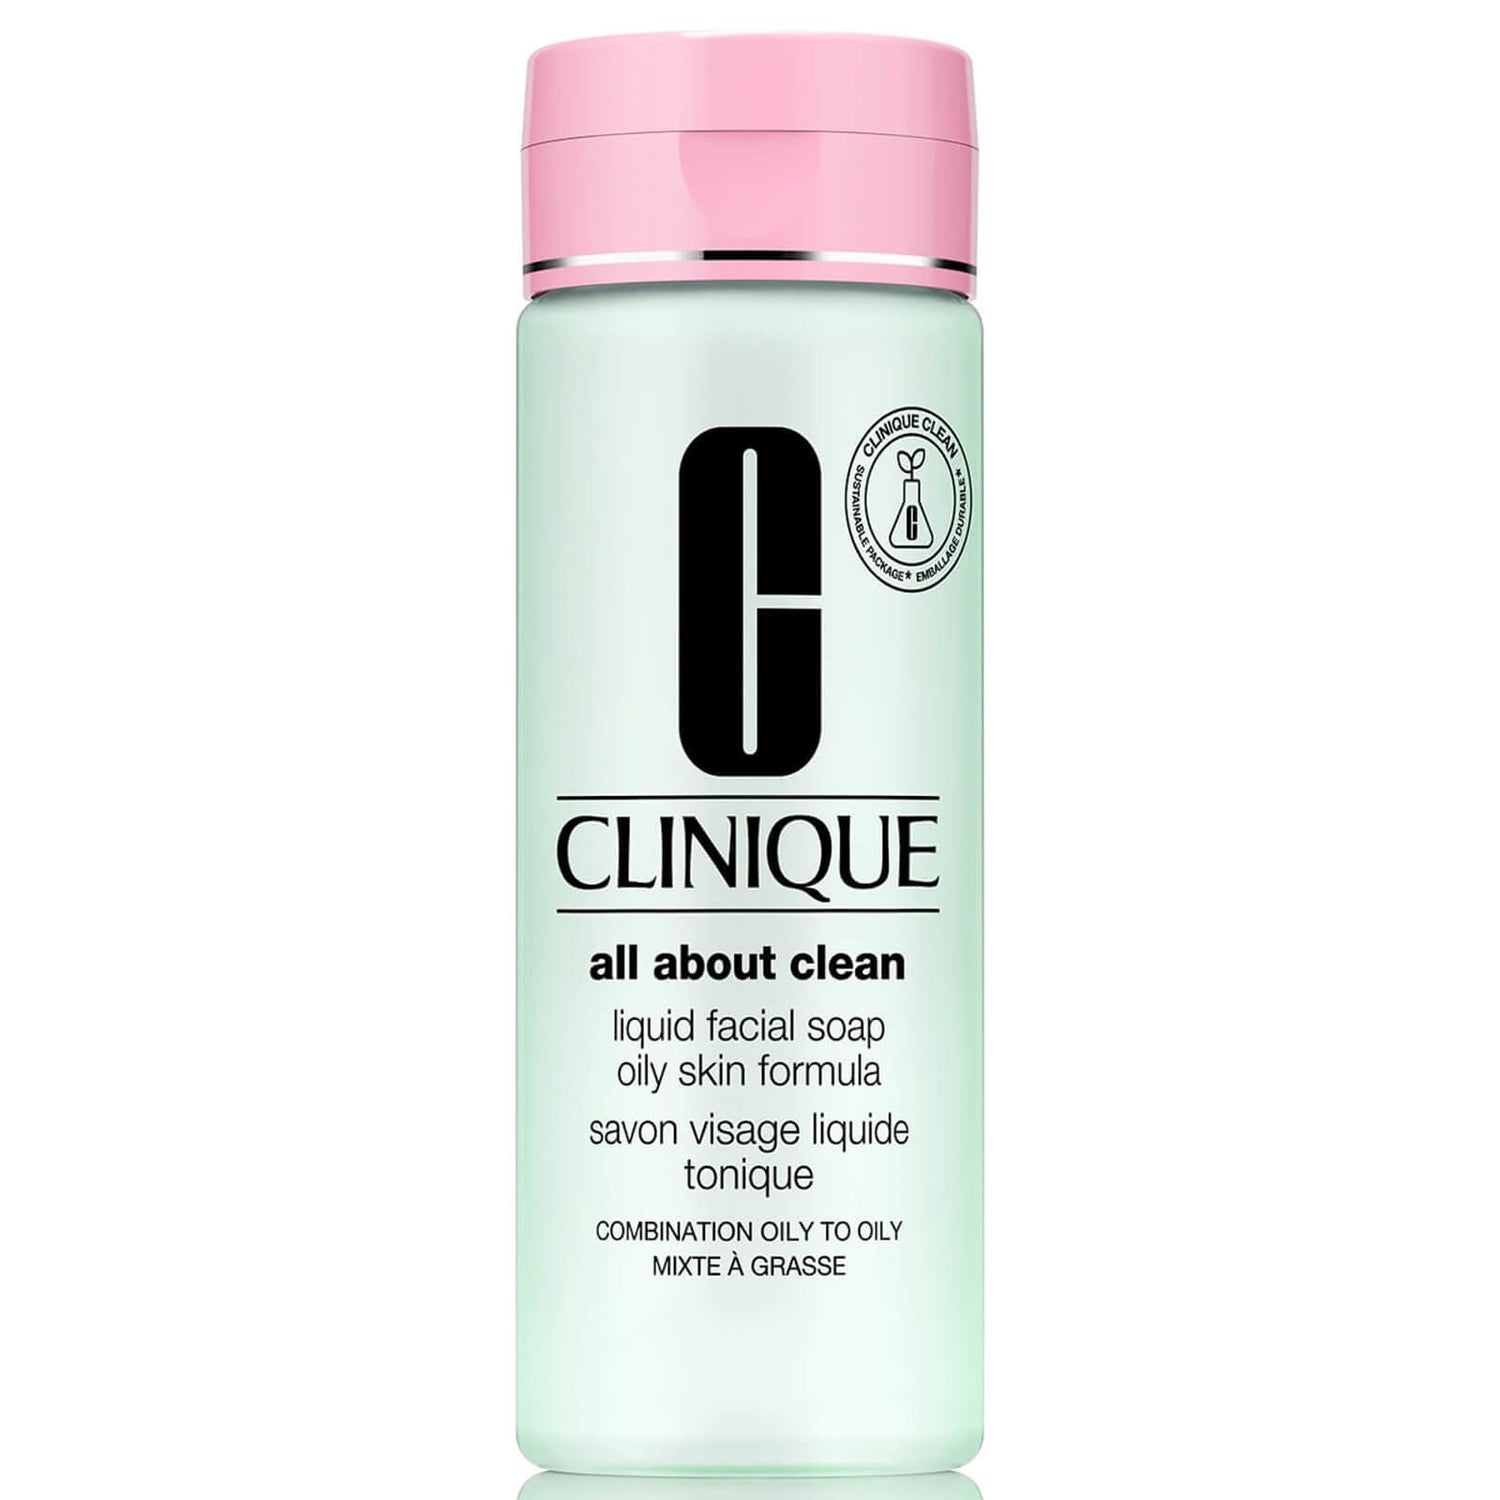 Clinique Liquid Facial Soap Oily Skin Formula -kasvosaippua, 200ml